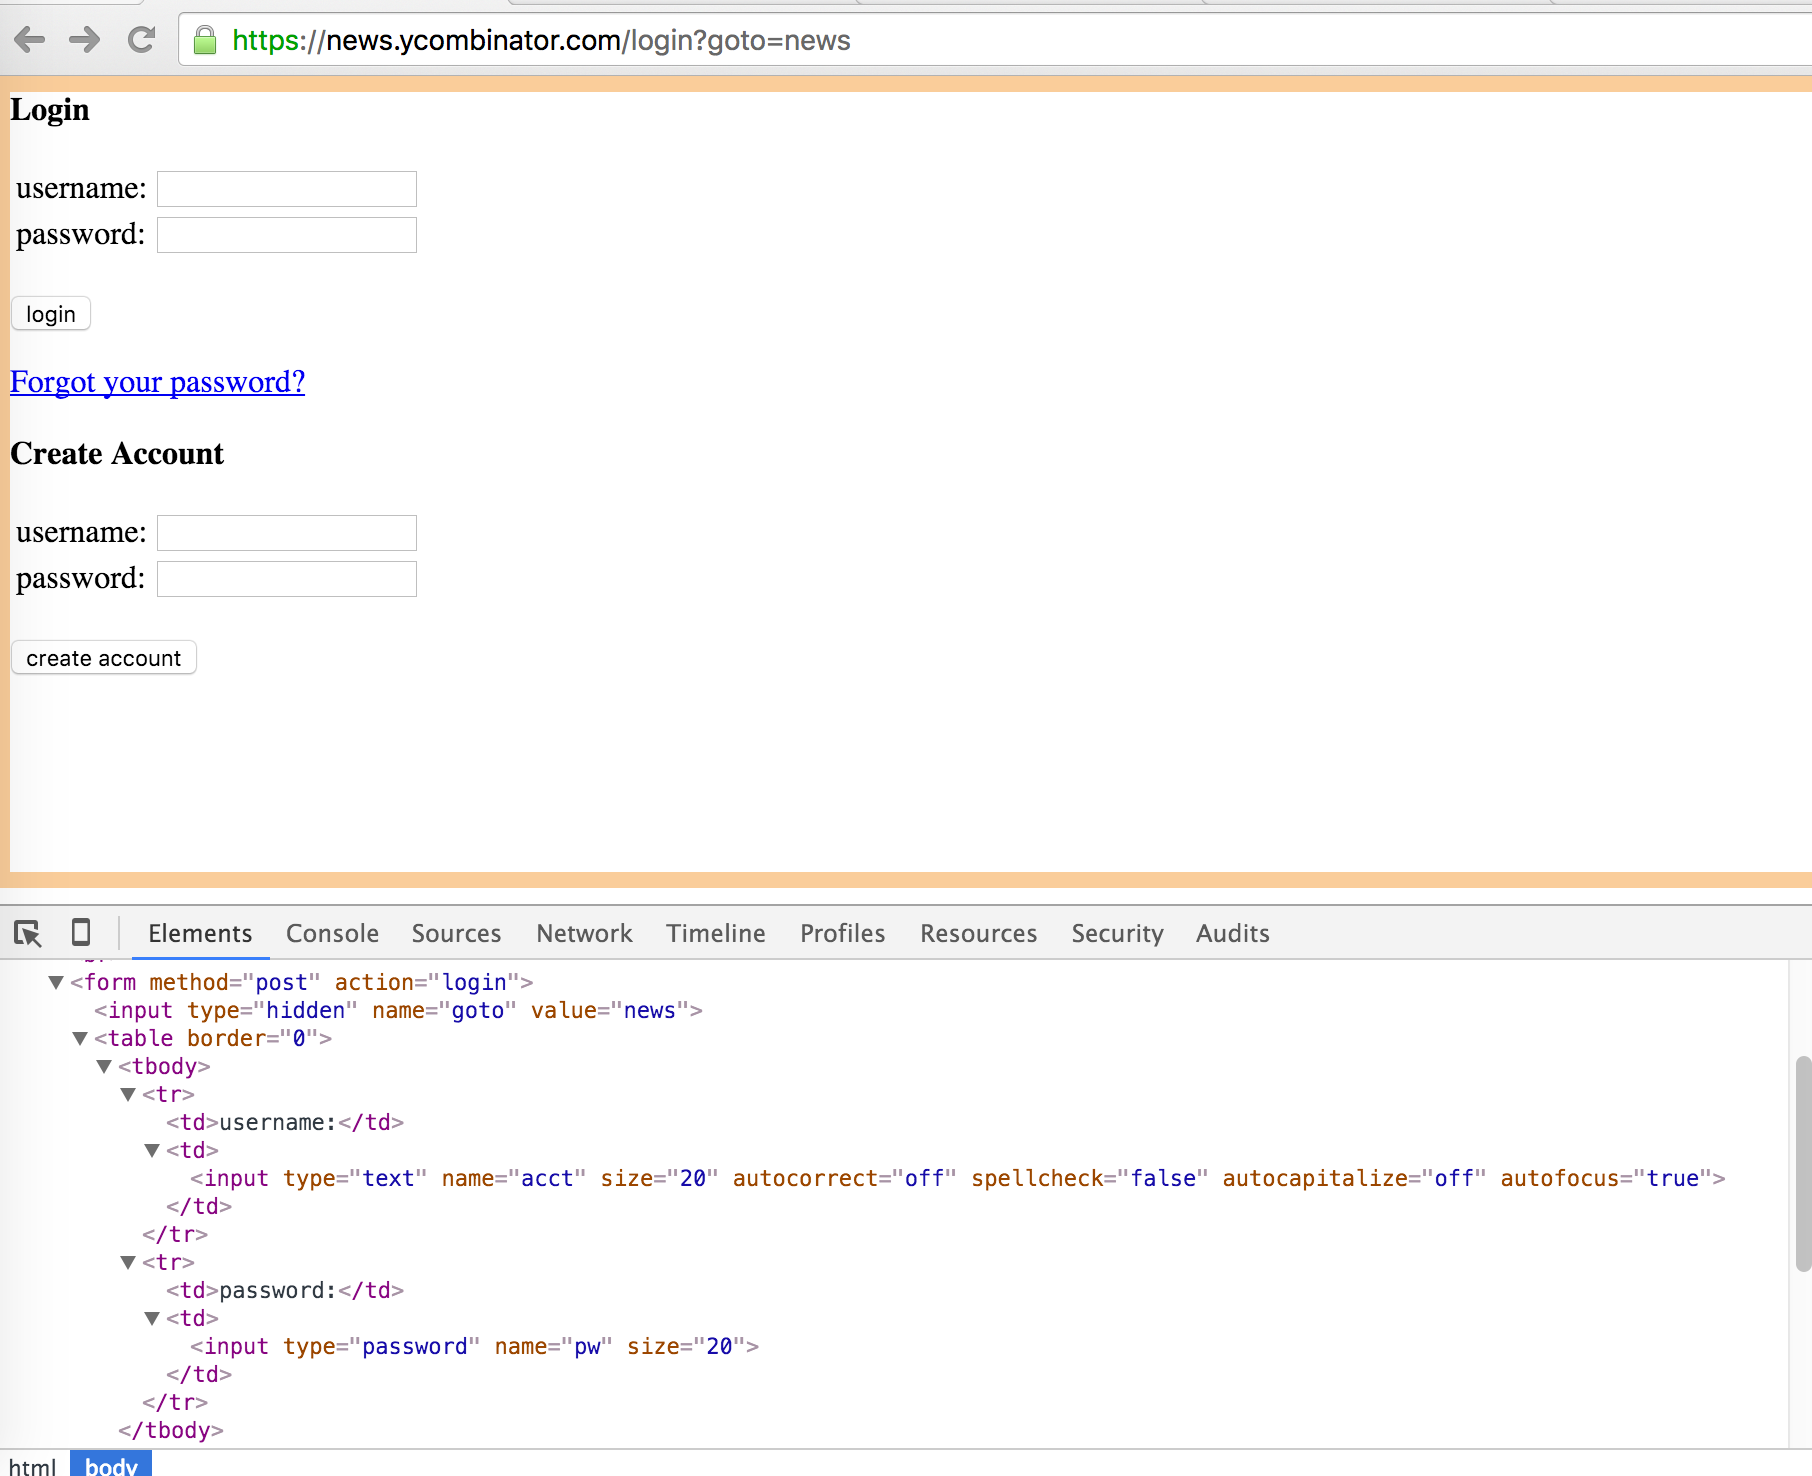 Screenshot of Hacker News login form